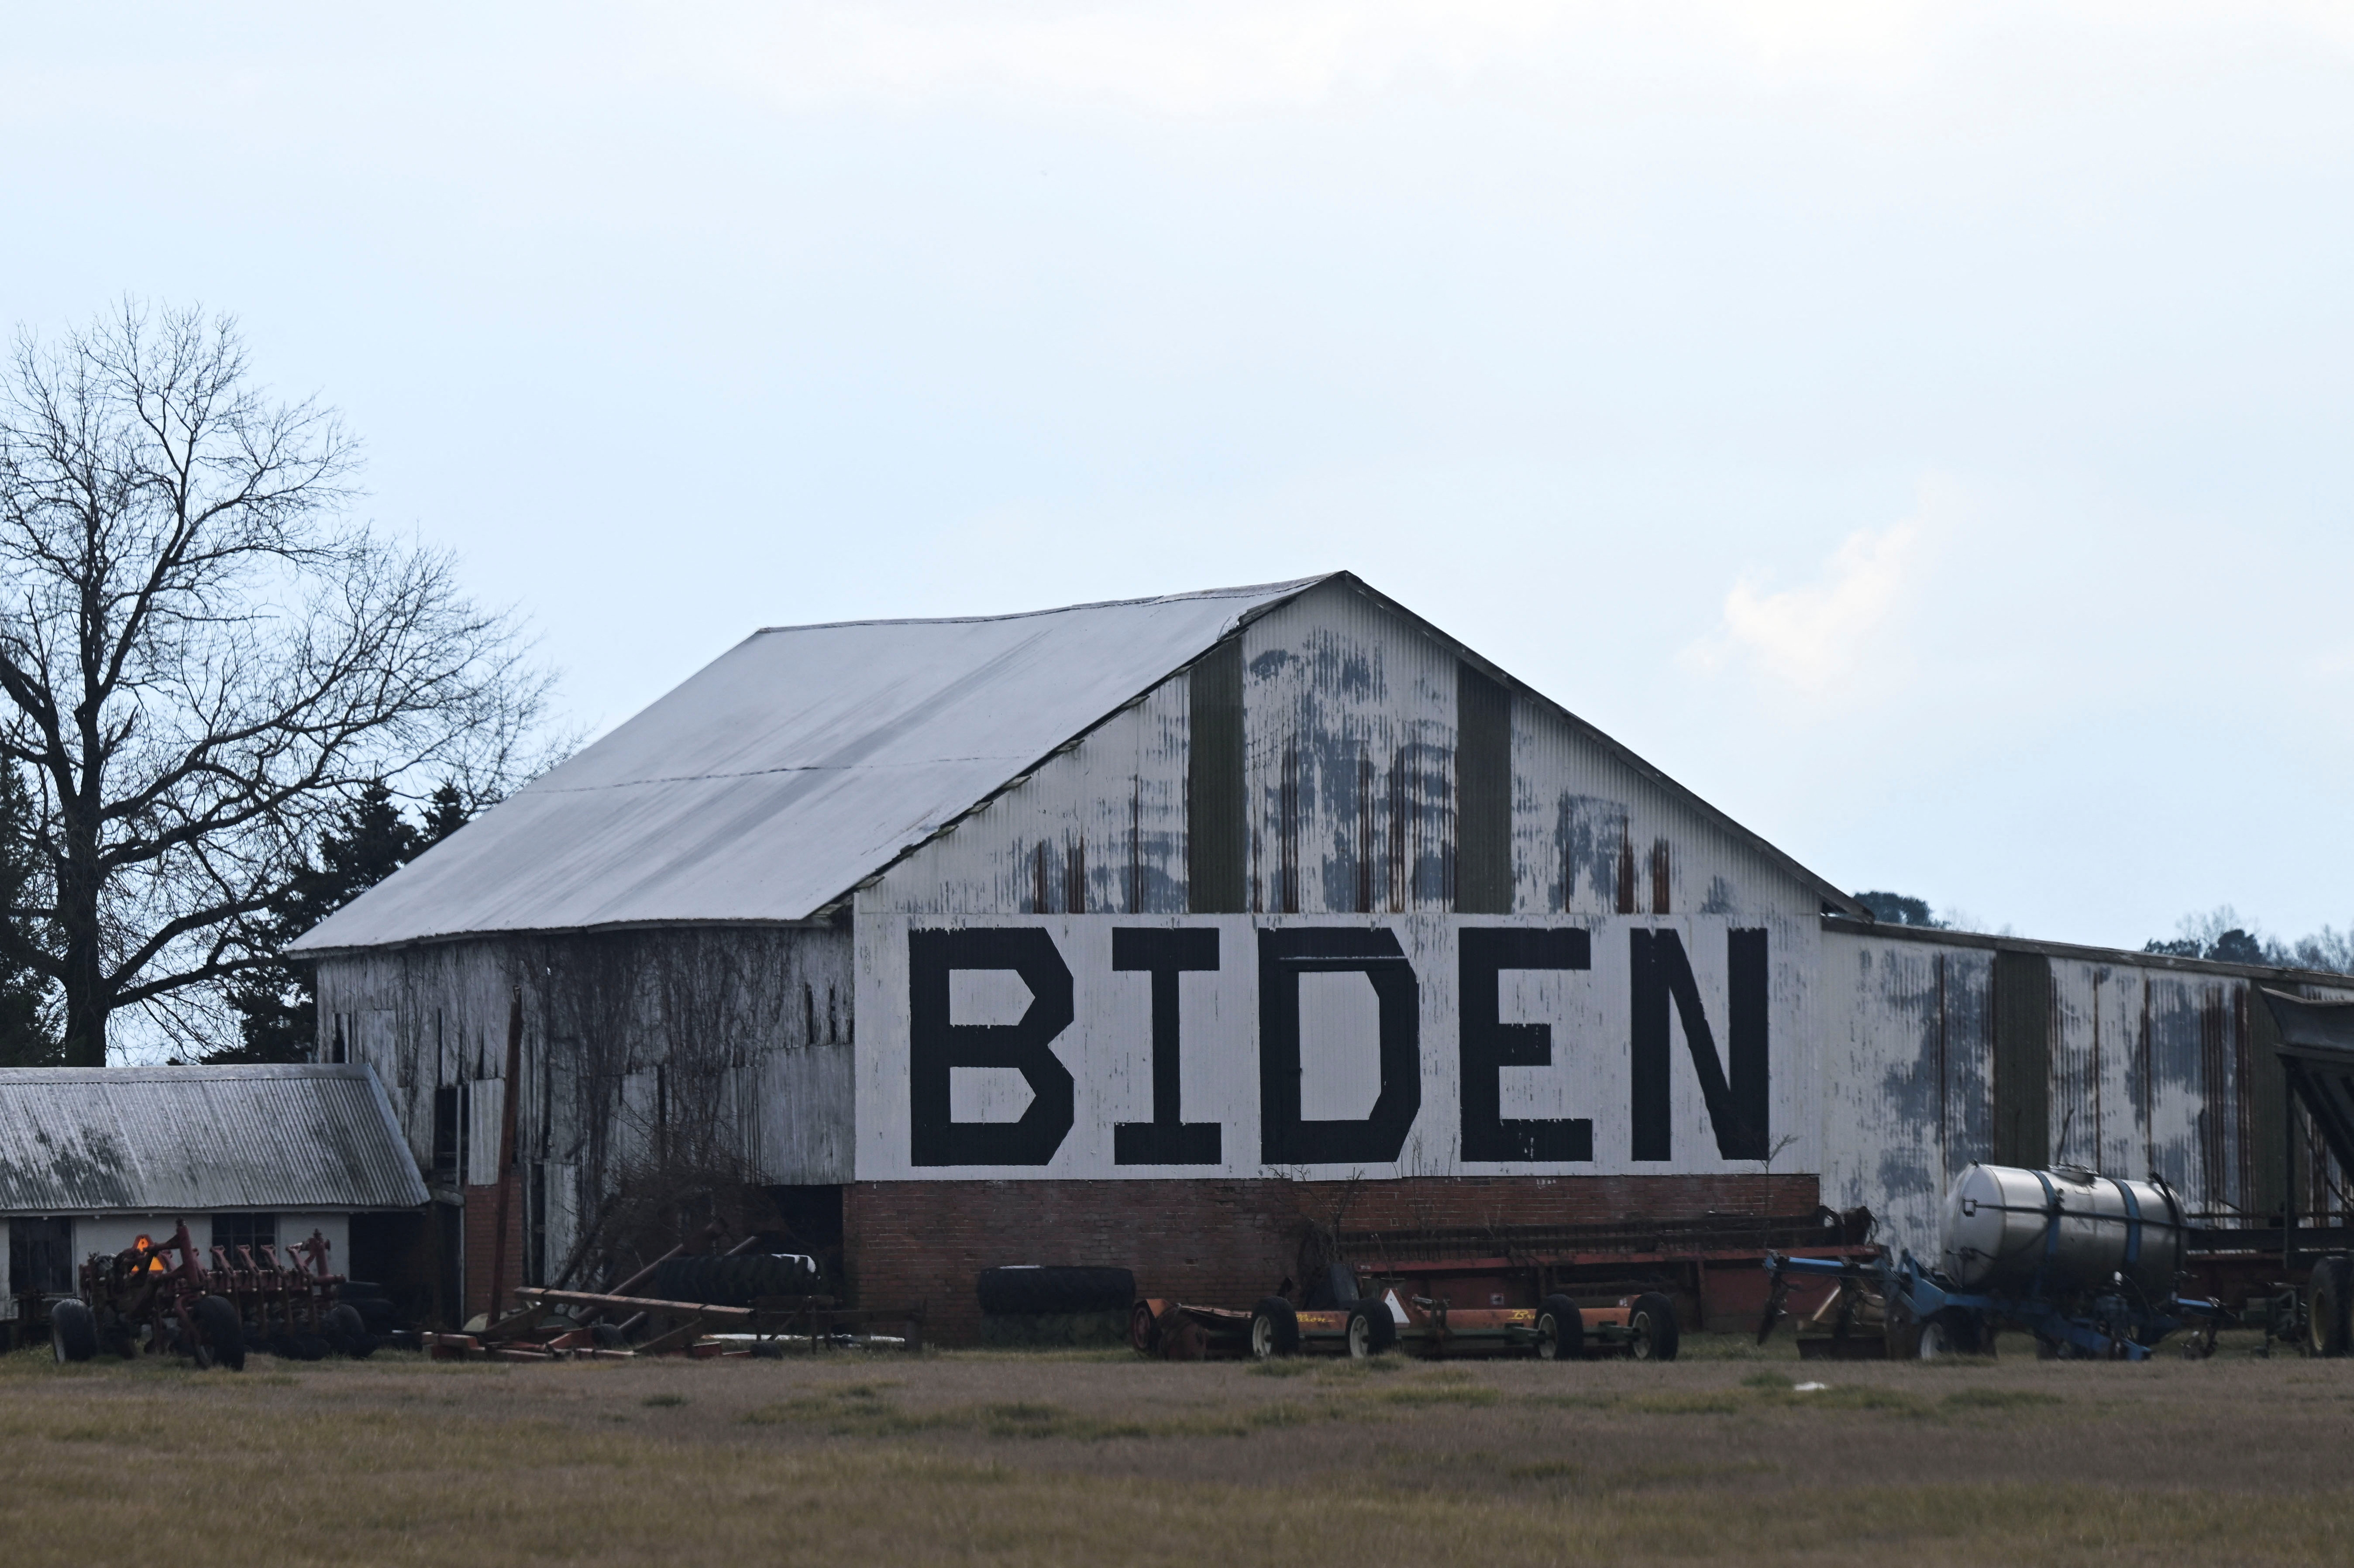 En un granero está pintado "BIDEN" cerca de la casa de playa propiedad del presidente estadounidense Joe Biden, luego de que agentes del FBI realizaran una búsqueda planificada de la propiedad en Rehoboth Beach, Delaware, EEUU